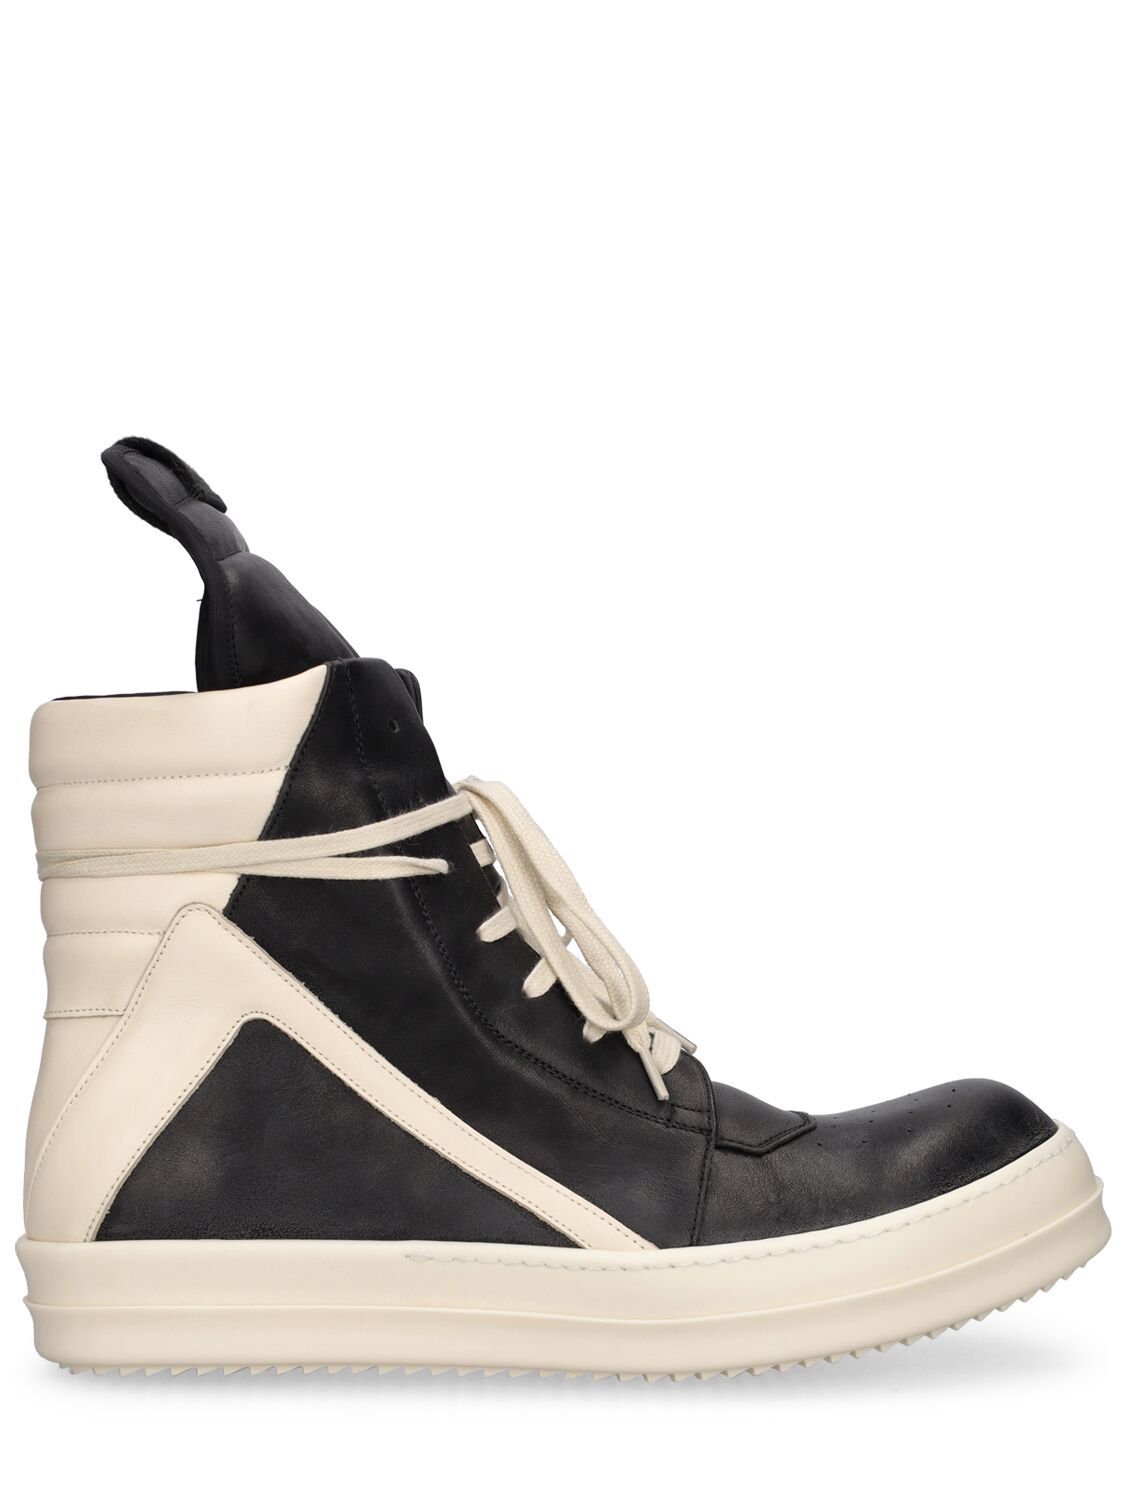 Shop Rick Owens Geobasket High Top Sneakers In Black,milk